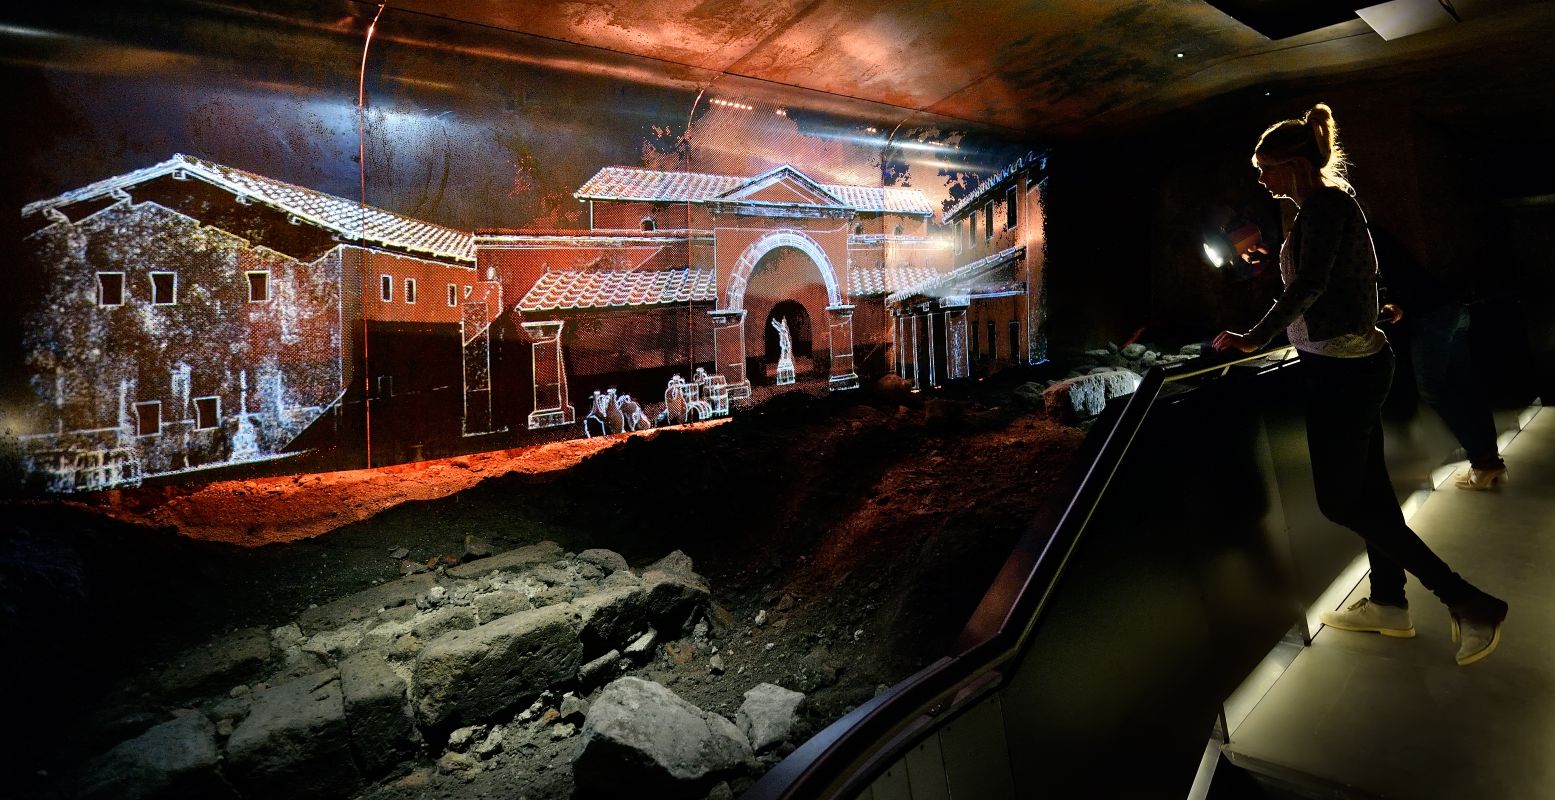 Ontdek bij DOMunder tussen ondergrondse opgravingen Romeins fort Traiectum, waar gave projecties het verleden doen herleven. Foto: DOMunder © Mike Bink